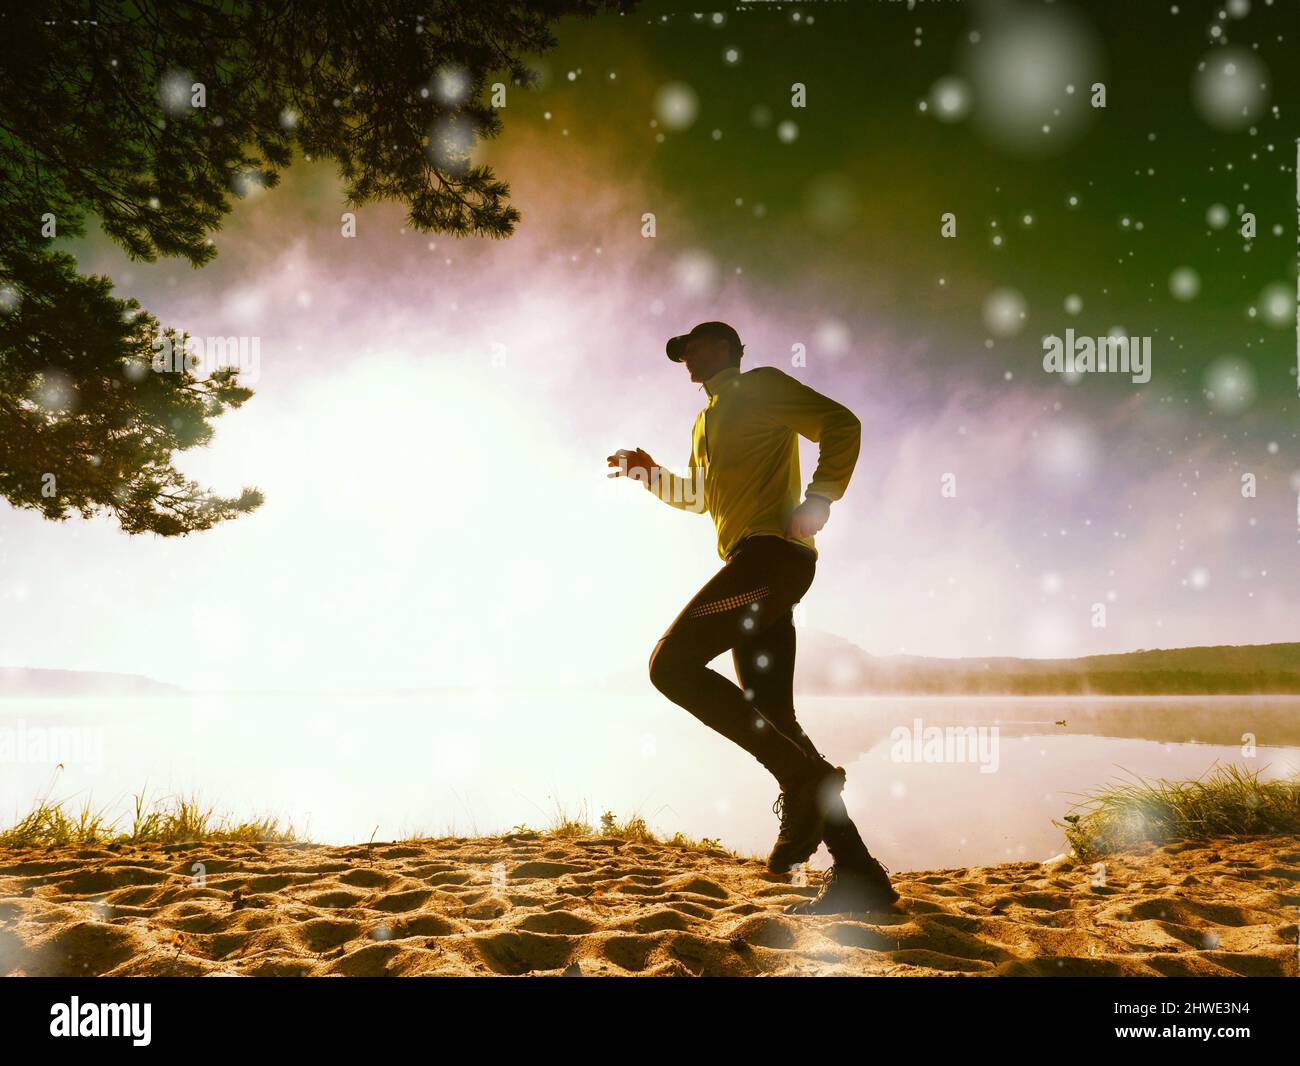 Congele el movimiento del hombre corriendo en la playa de arena en el lago. Chellar copos de nieve de nuevo sol bajo. Iluminación abstracta, llamaradas coloridas. Foto de stock